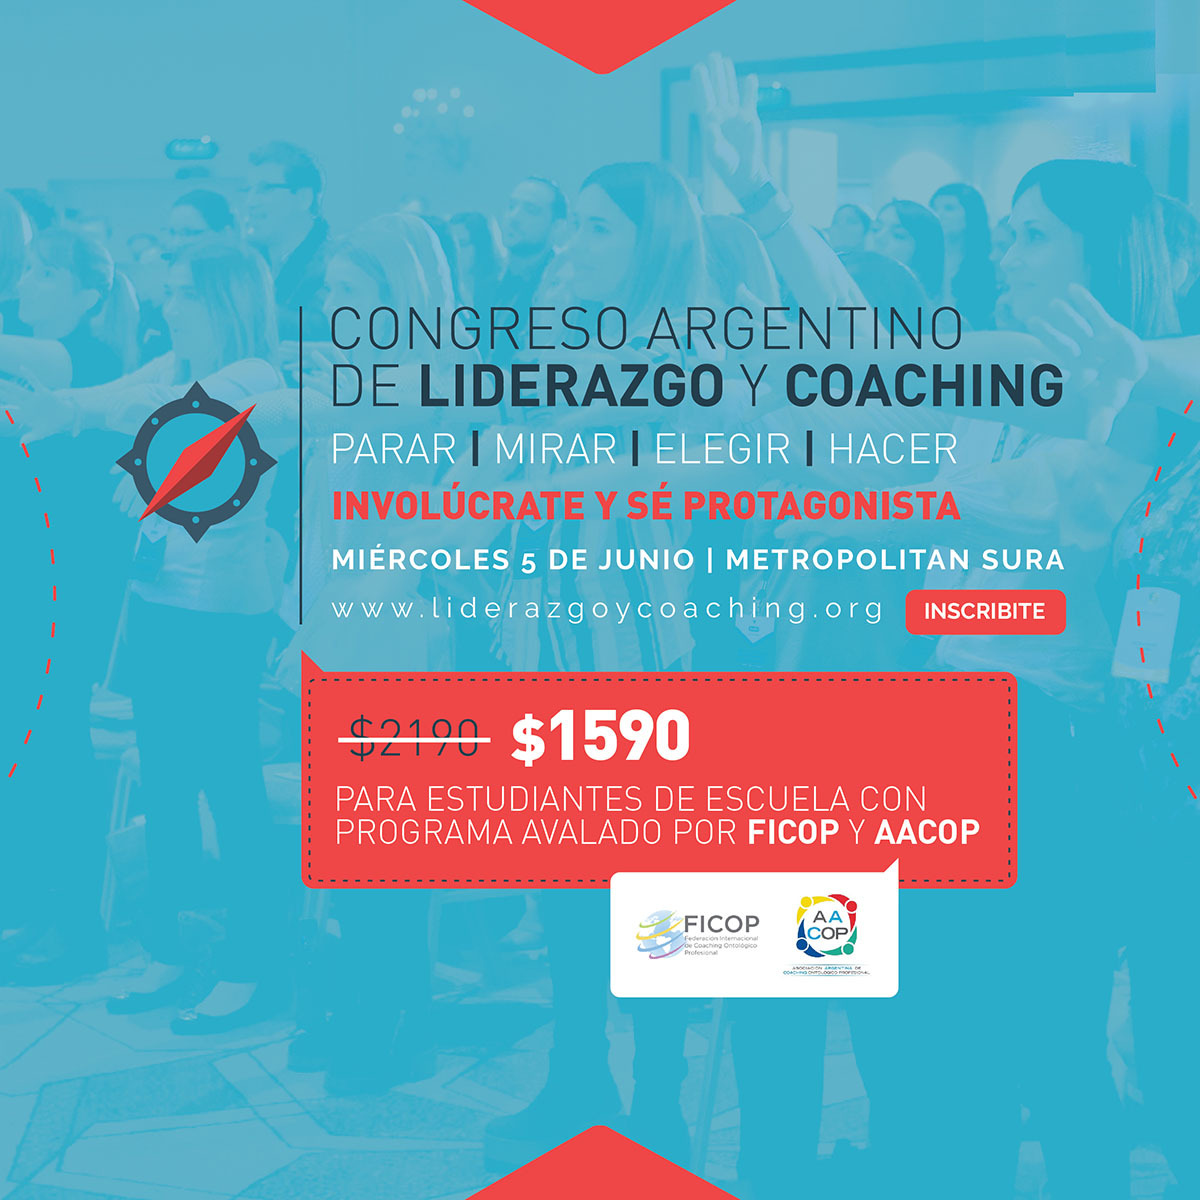 ¡IMPERDIBLE! Llega el Congreso Argentino de Liderazgo y Coaching | imagen